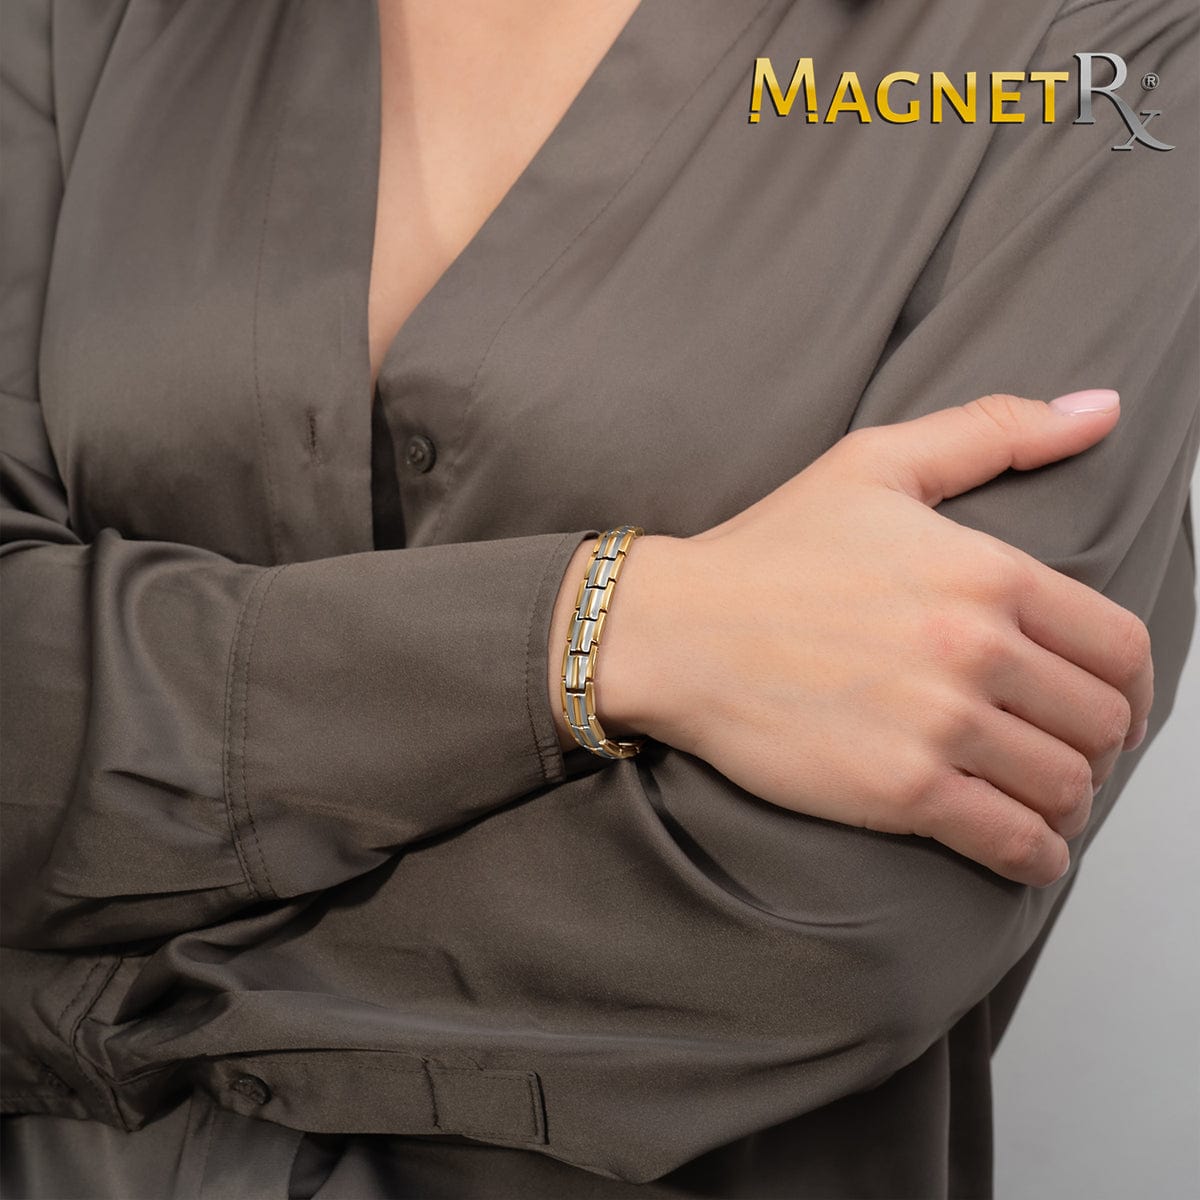 Magnetrx Women's Ultra Strength Magnetic Bracelet